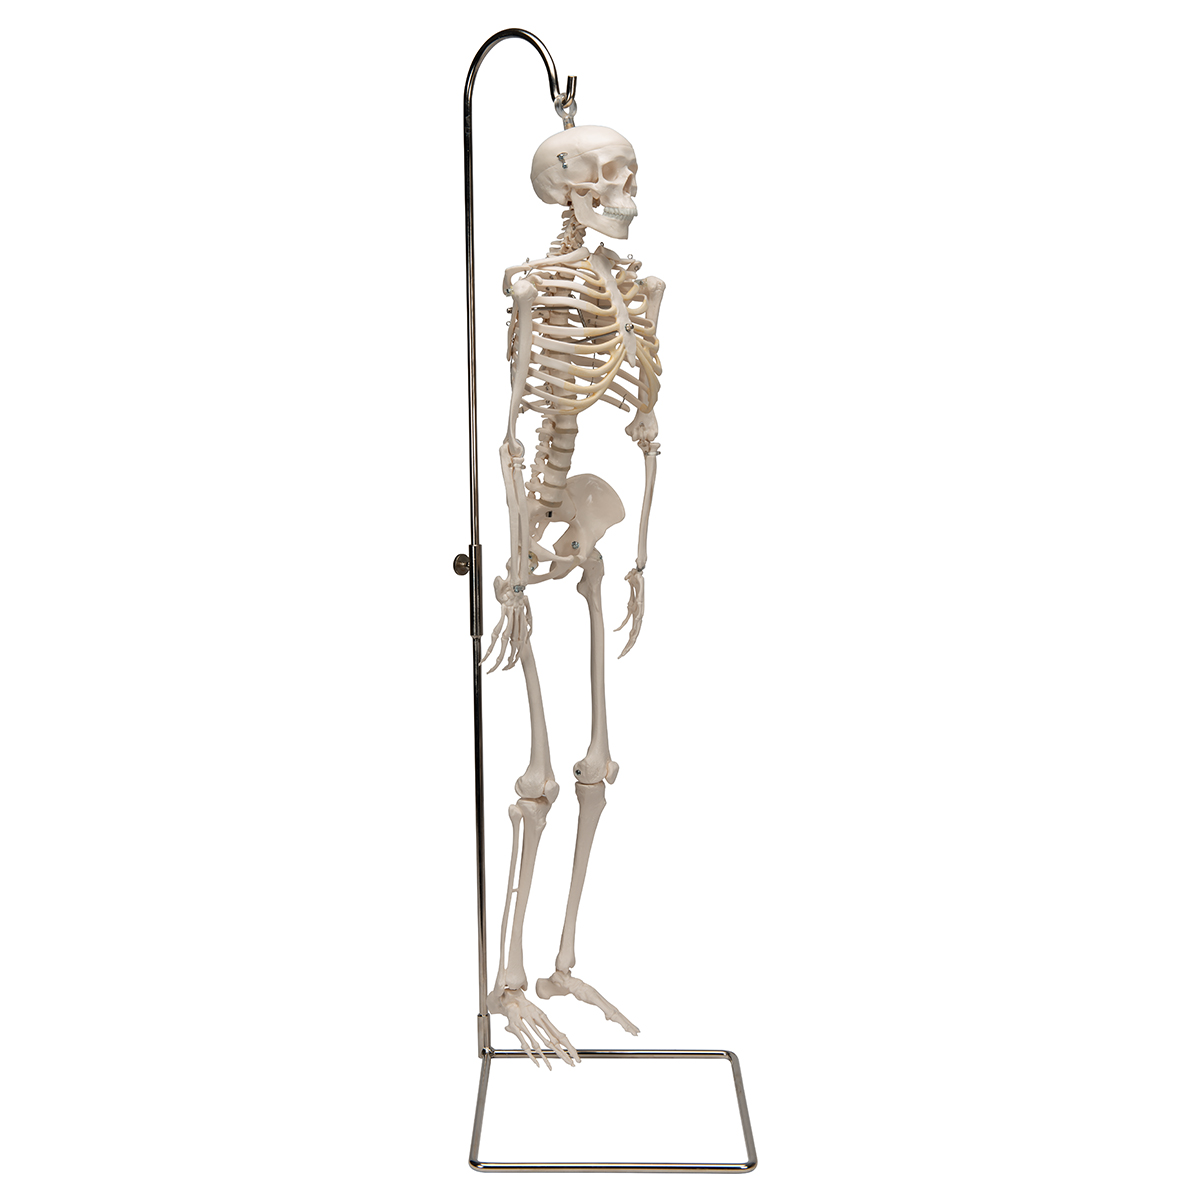 Mini squelette humain médical pour anatomie, modèle de squelette